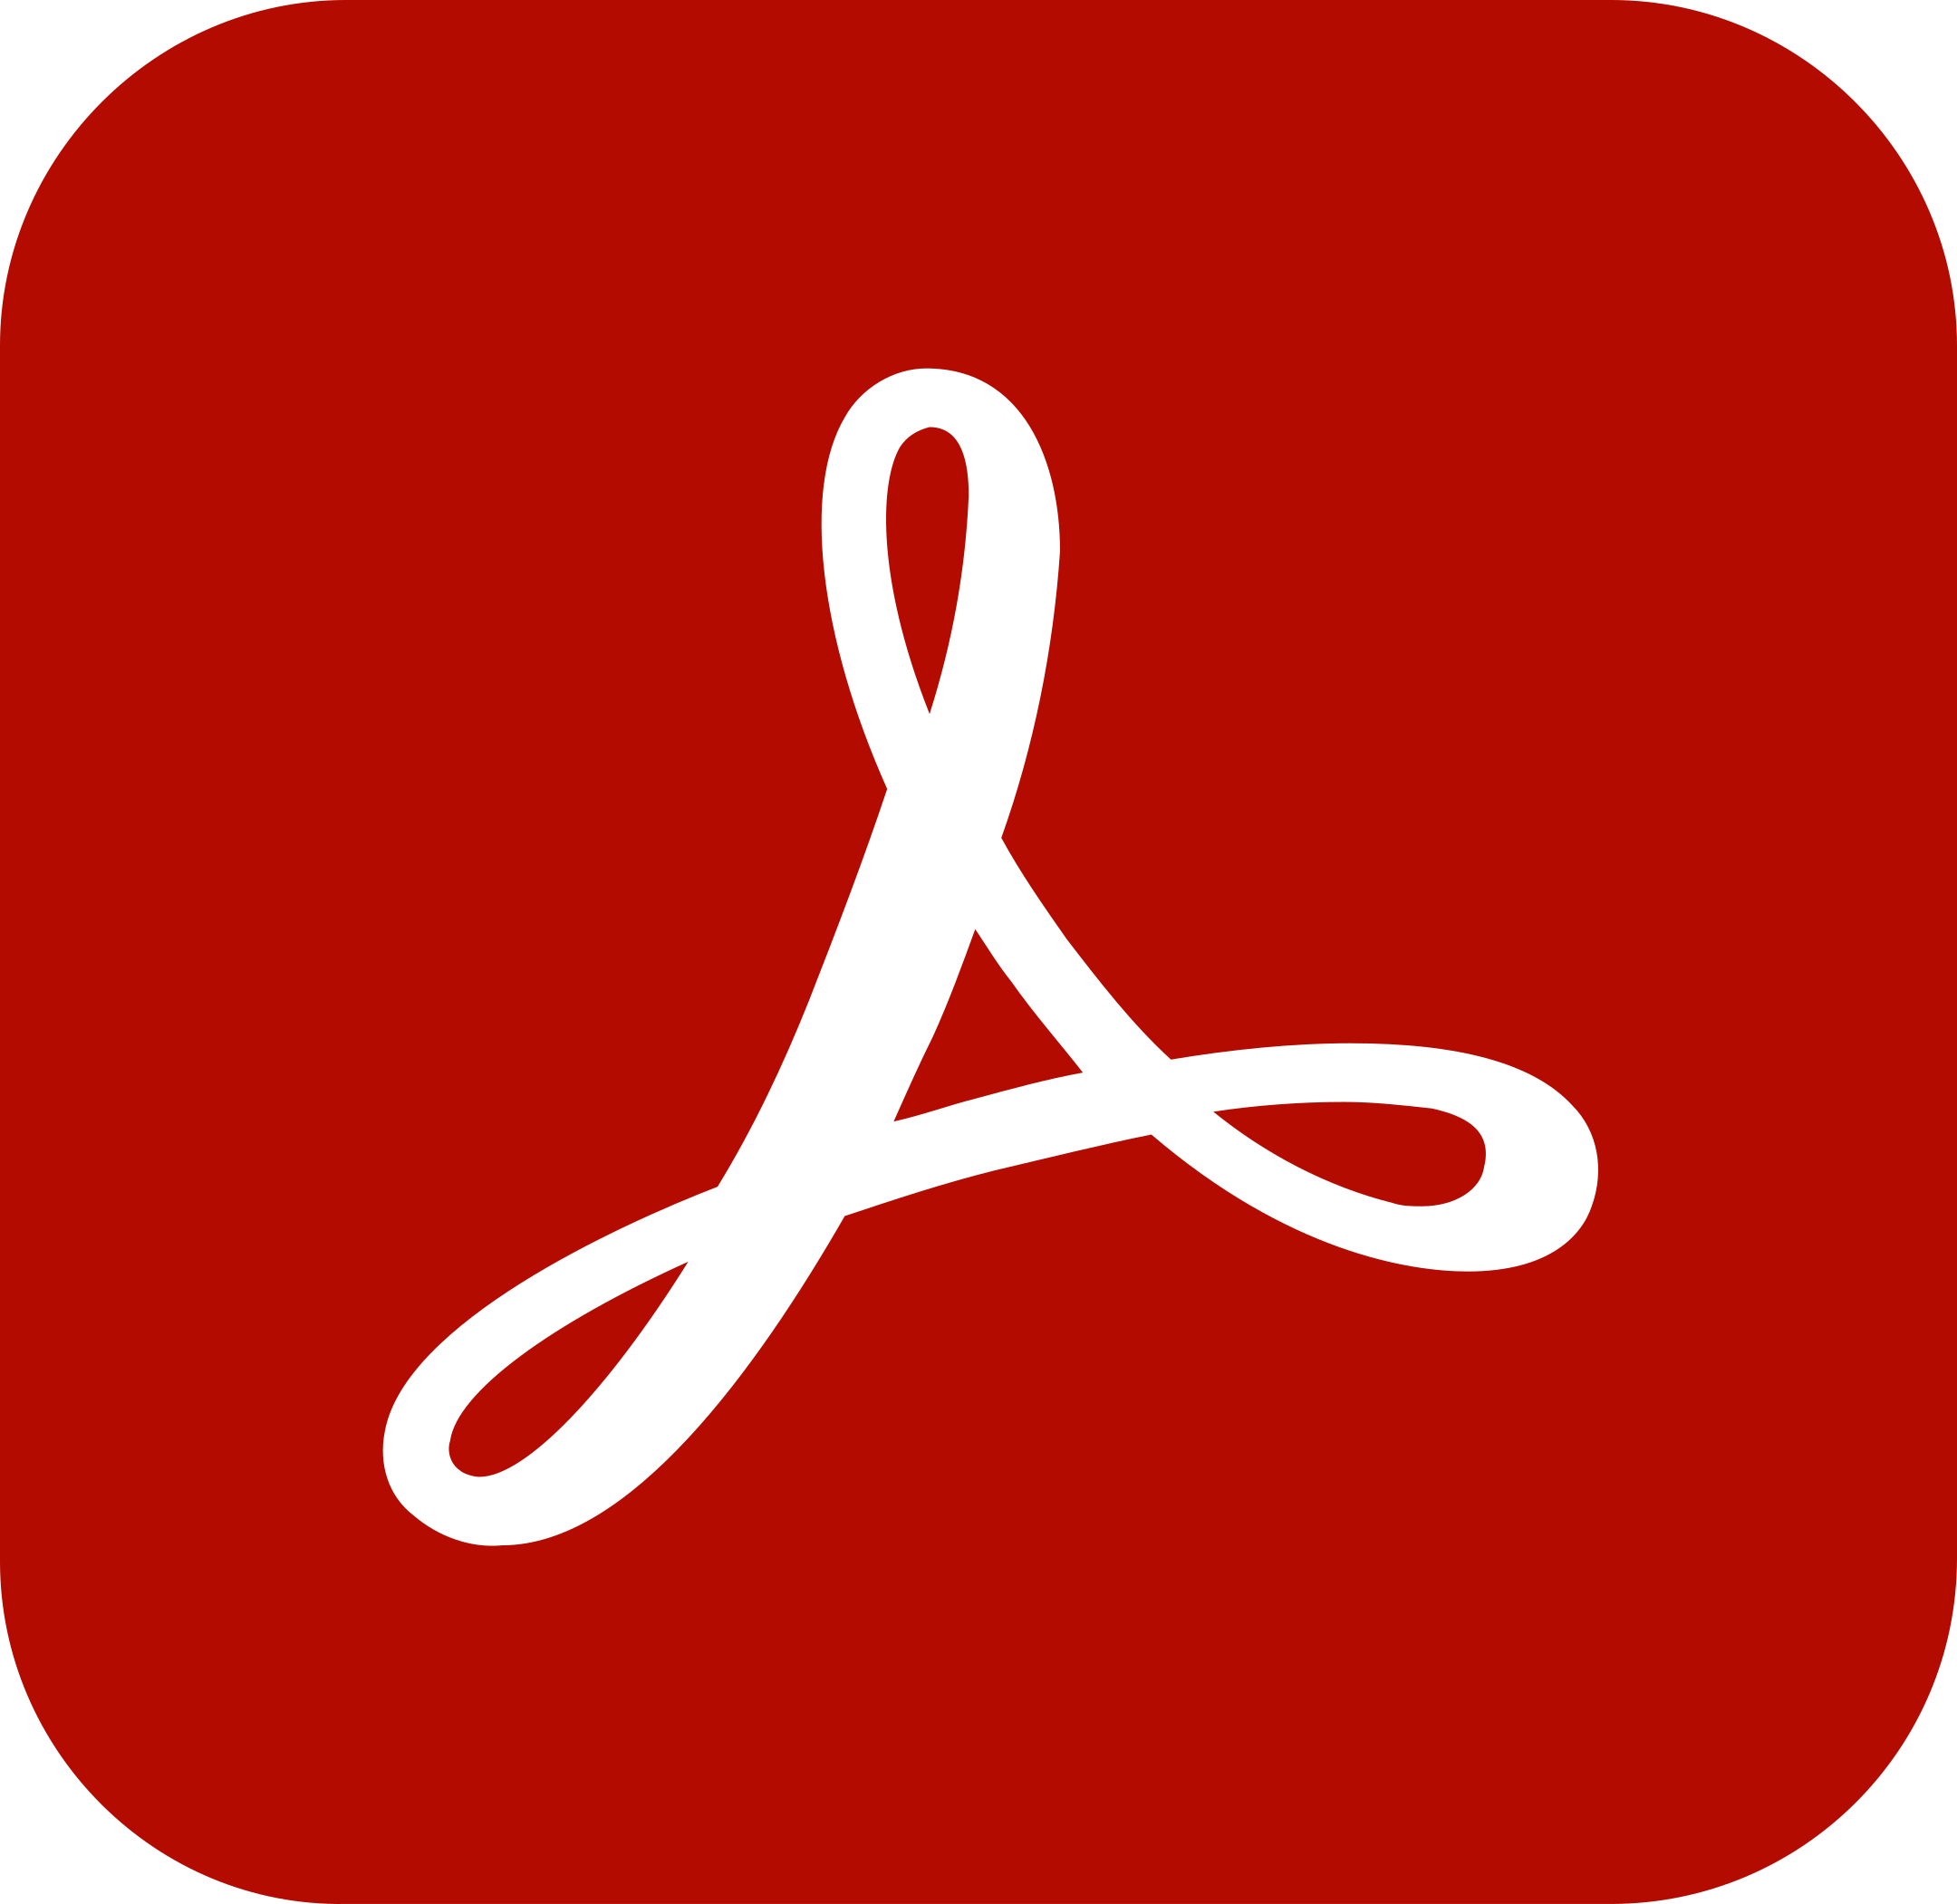 adobe acrobat reader logo 1 - Adobe Acrobat Reader Logo